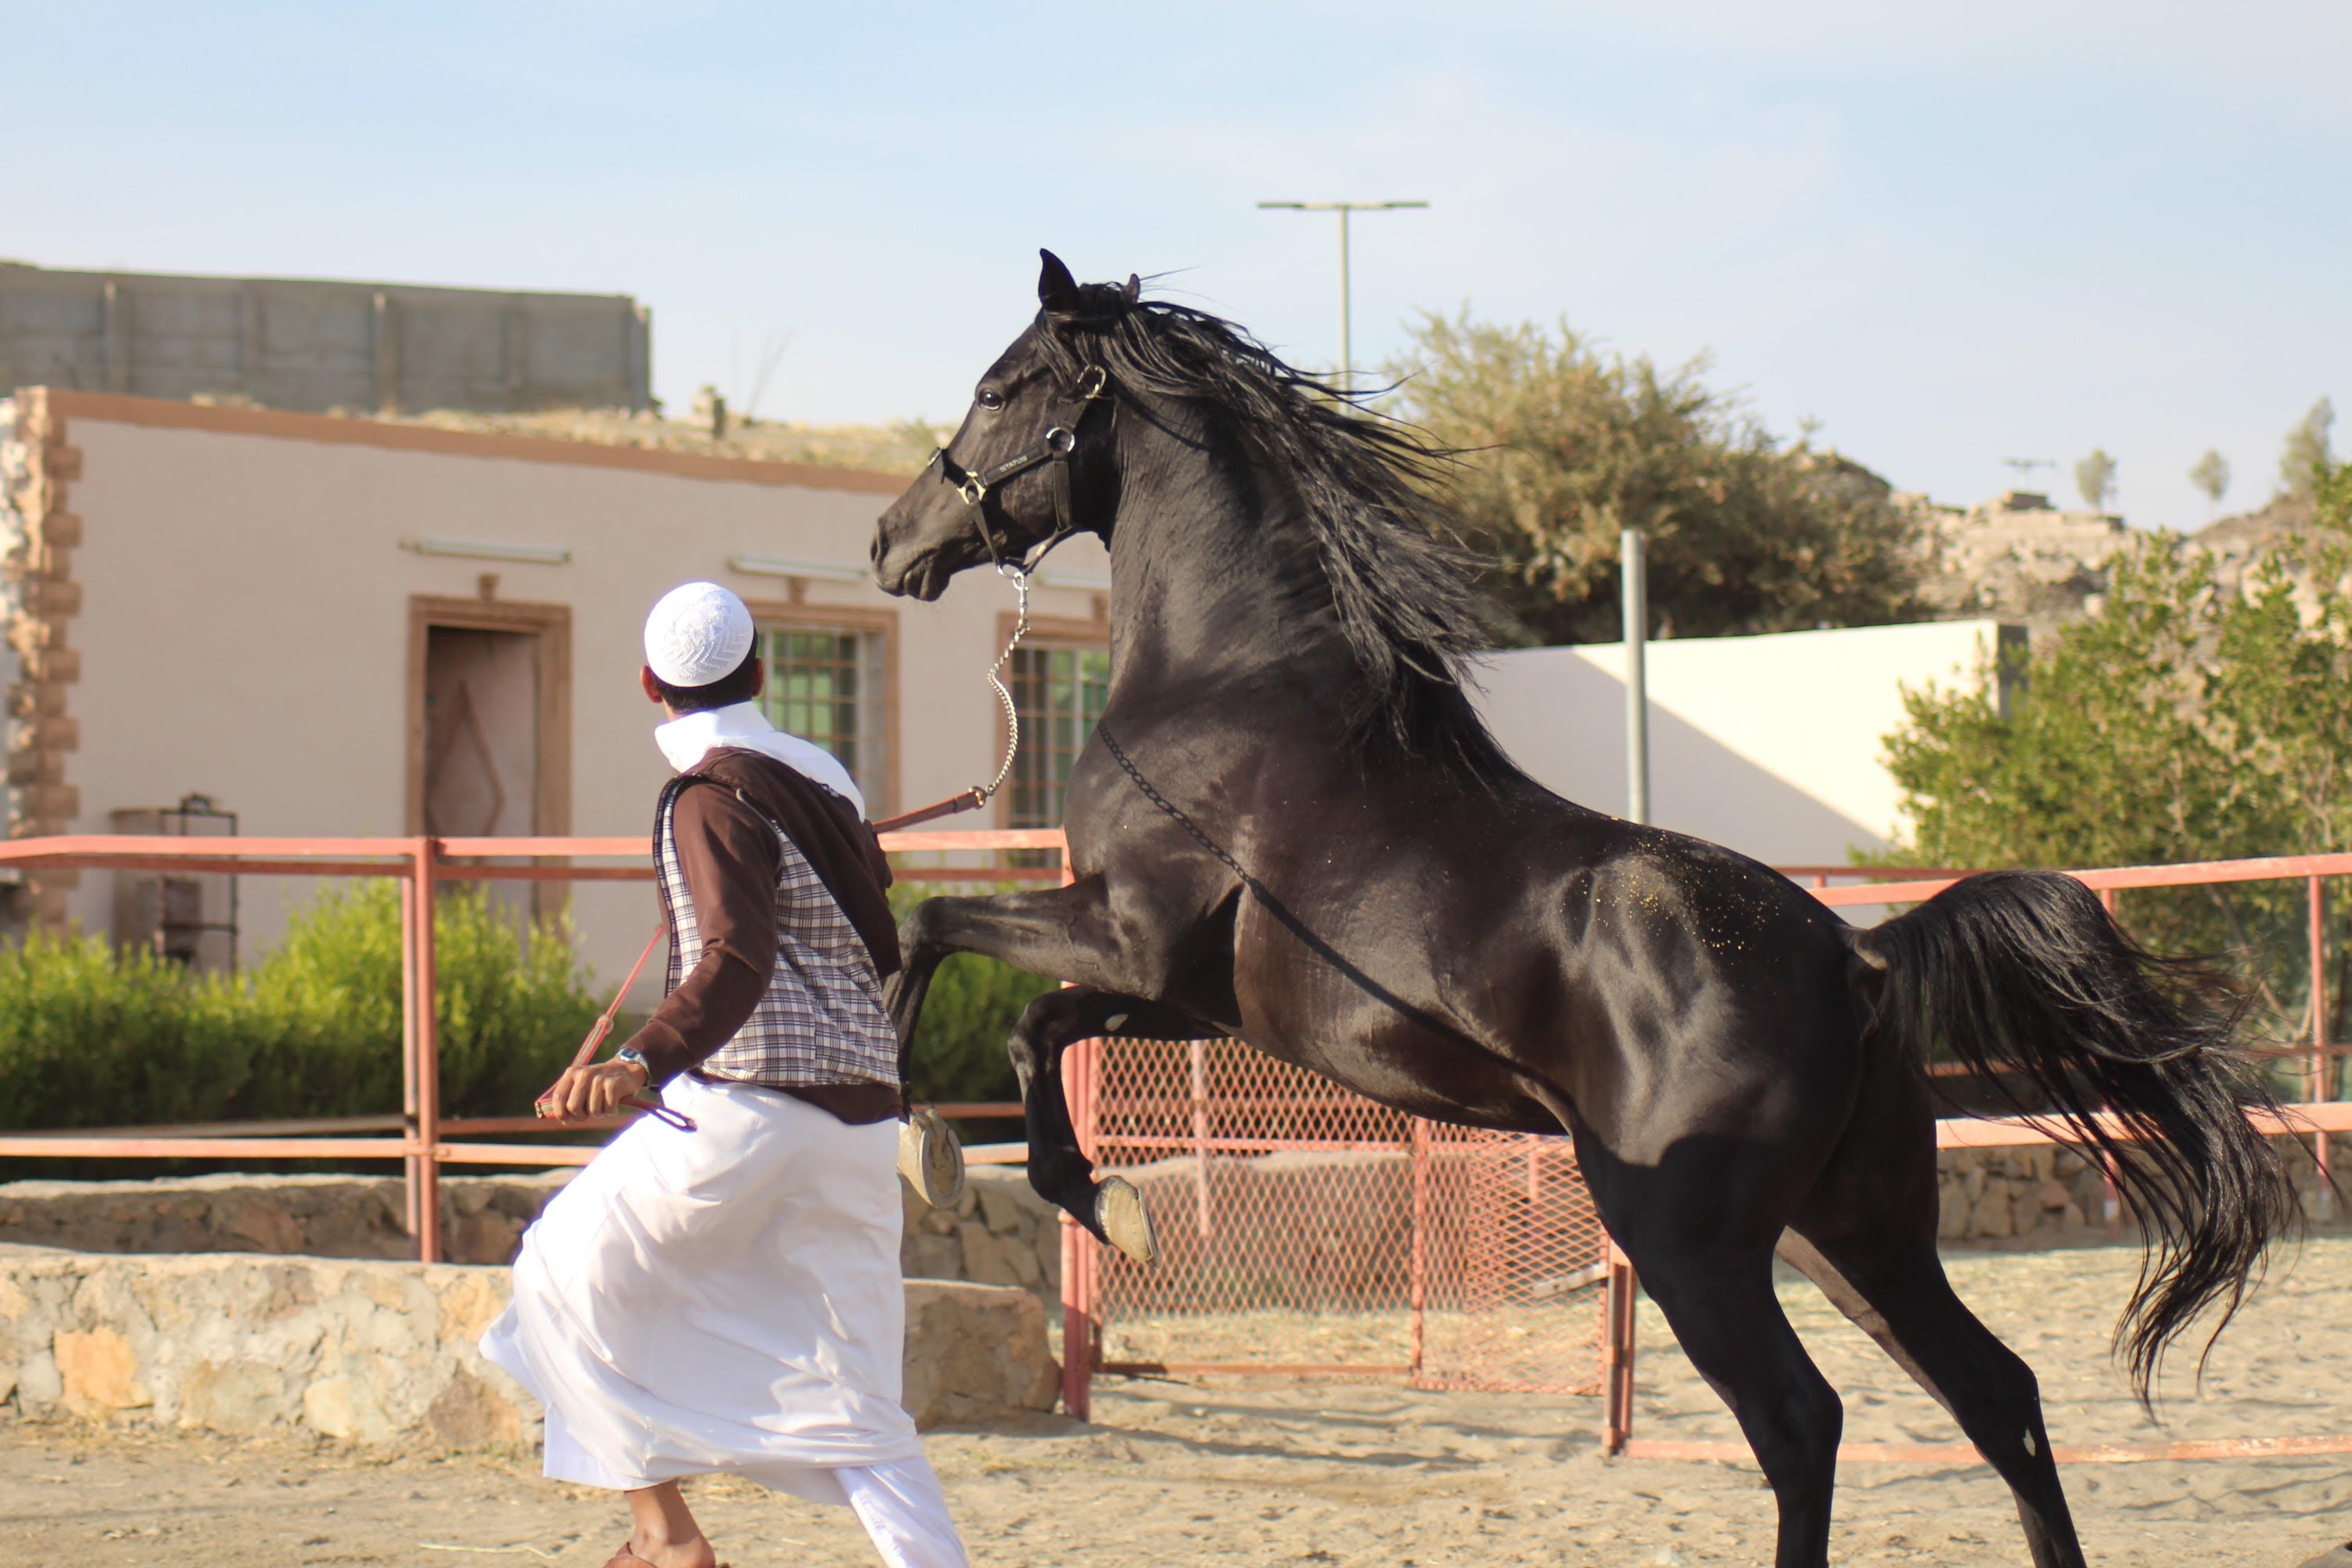 الخيل العربي الاصيل , الحصان العربى الاصلى - روح اطفال